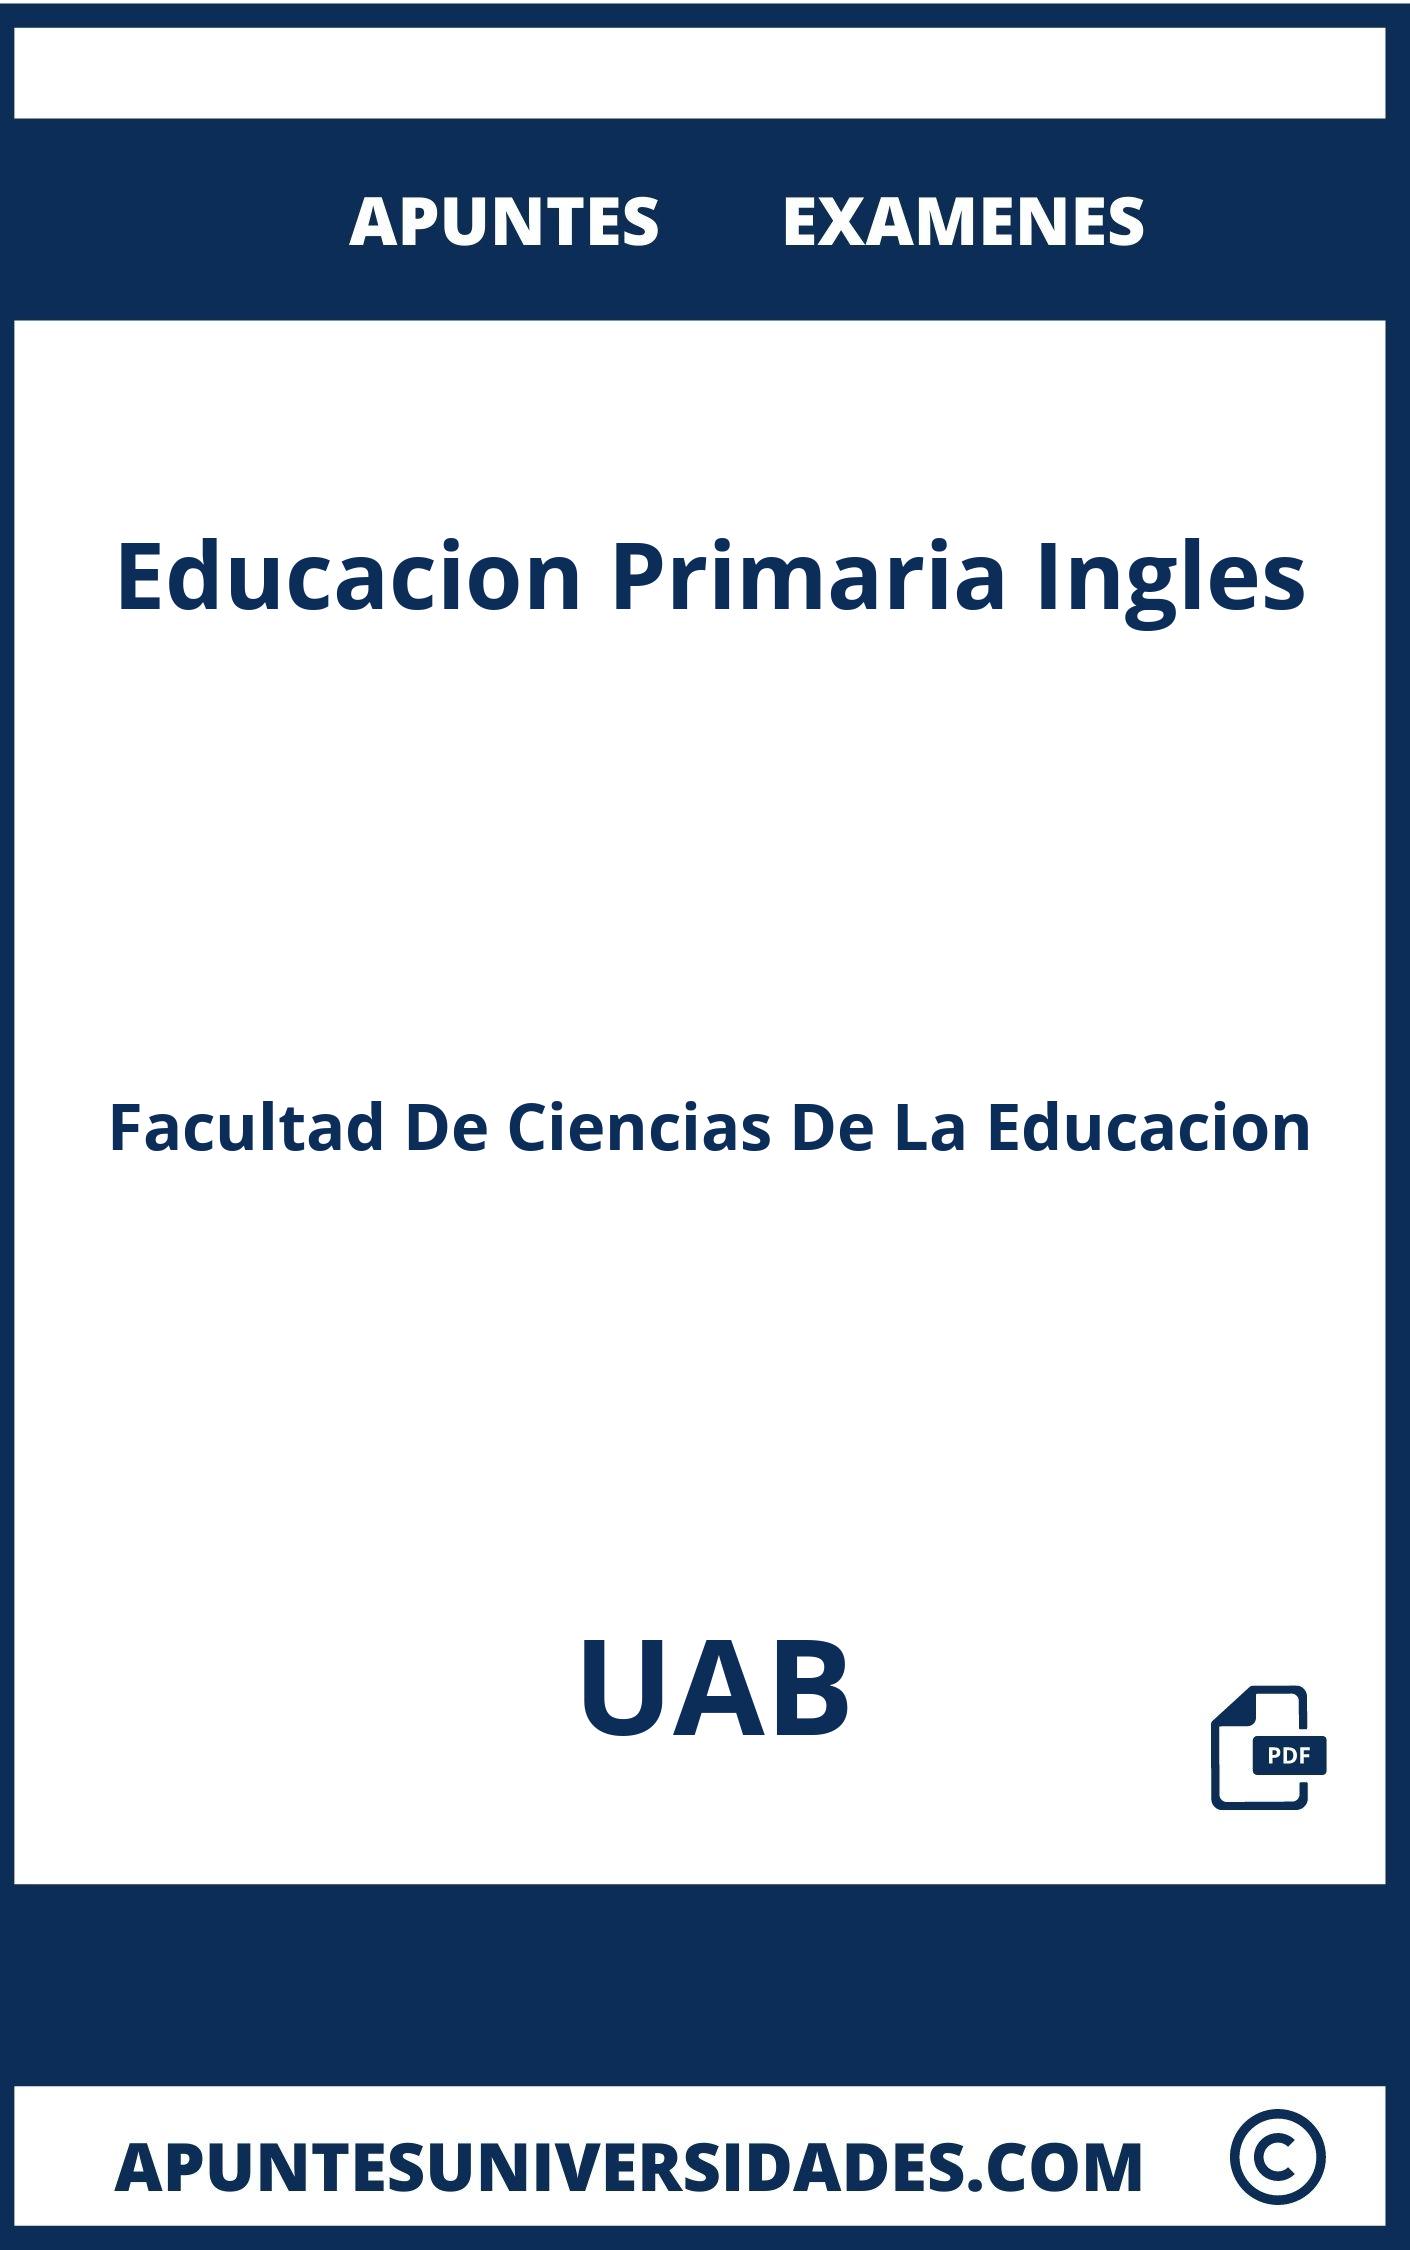 Examenes y Apuntes Educacion Primaria Ingles UAB